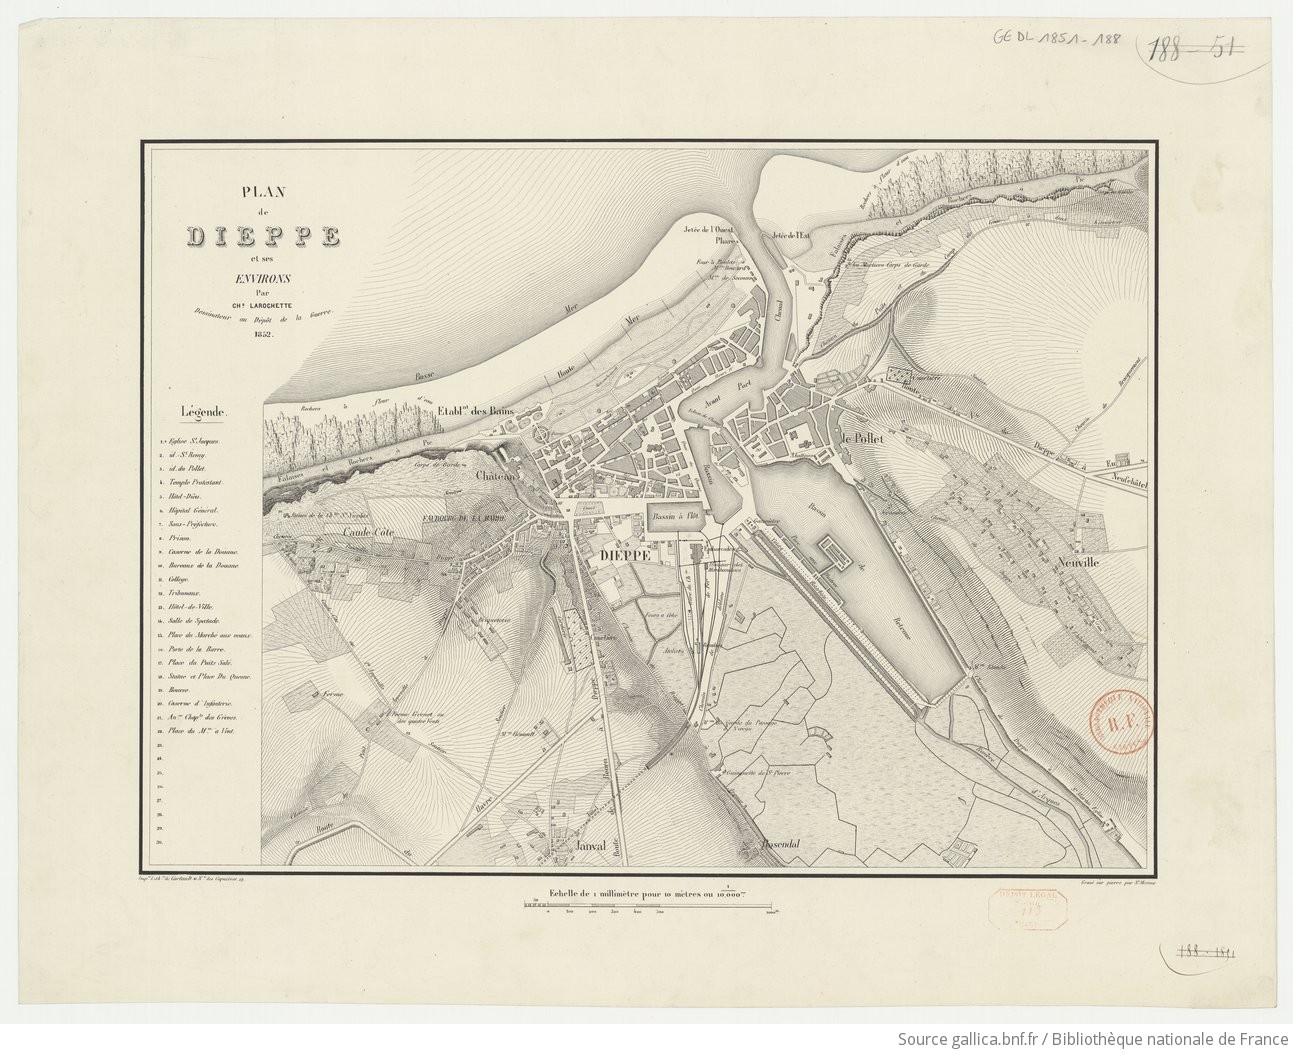 Plan de Dieppe et ses environs / par Ch. Larochette, dessinateur au Dépôt de la Guerre ; gravé sur pierre par St. Mesme